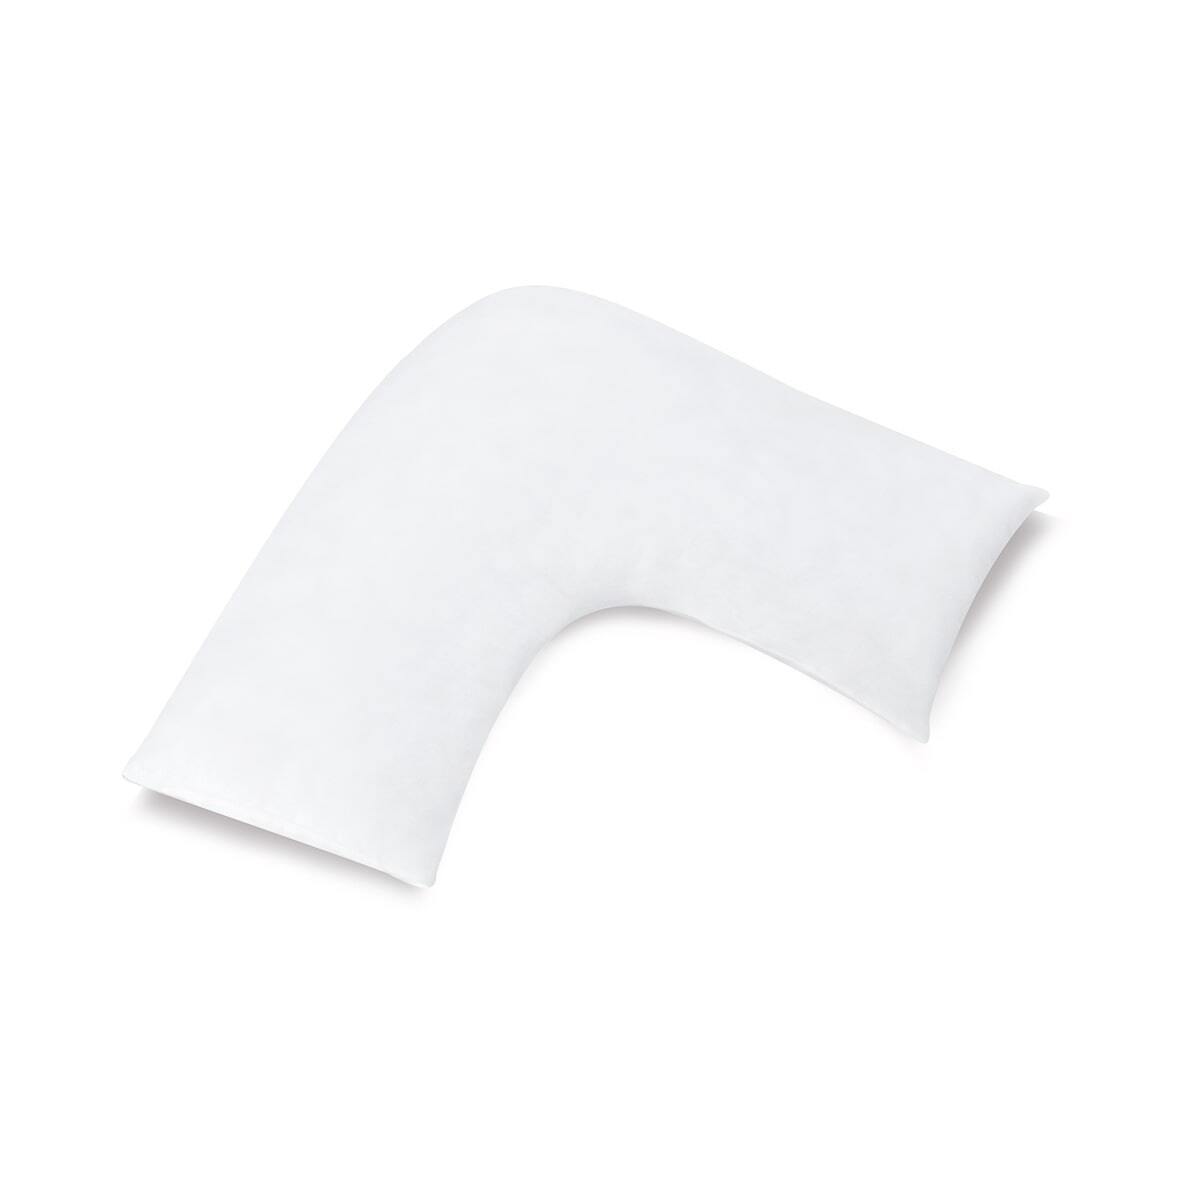 400 Thread Count White U-shaped Pillowcase